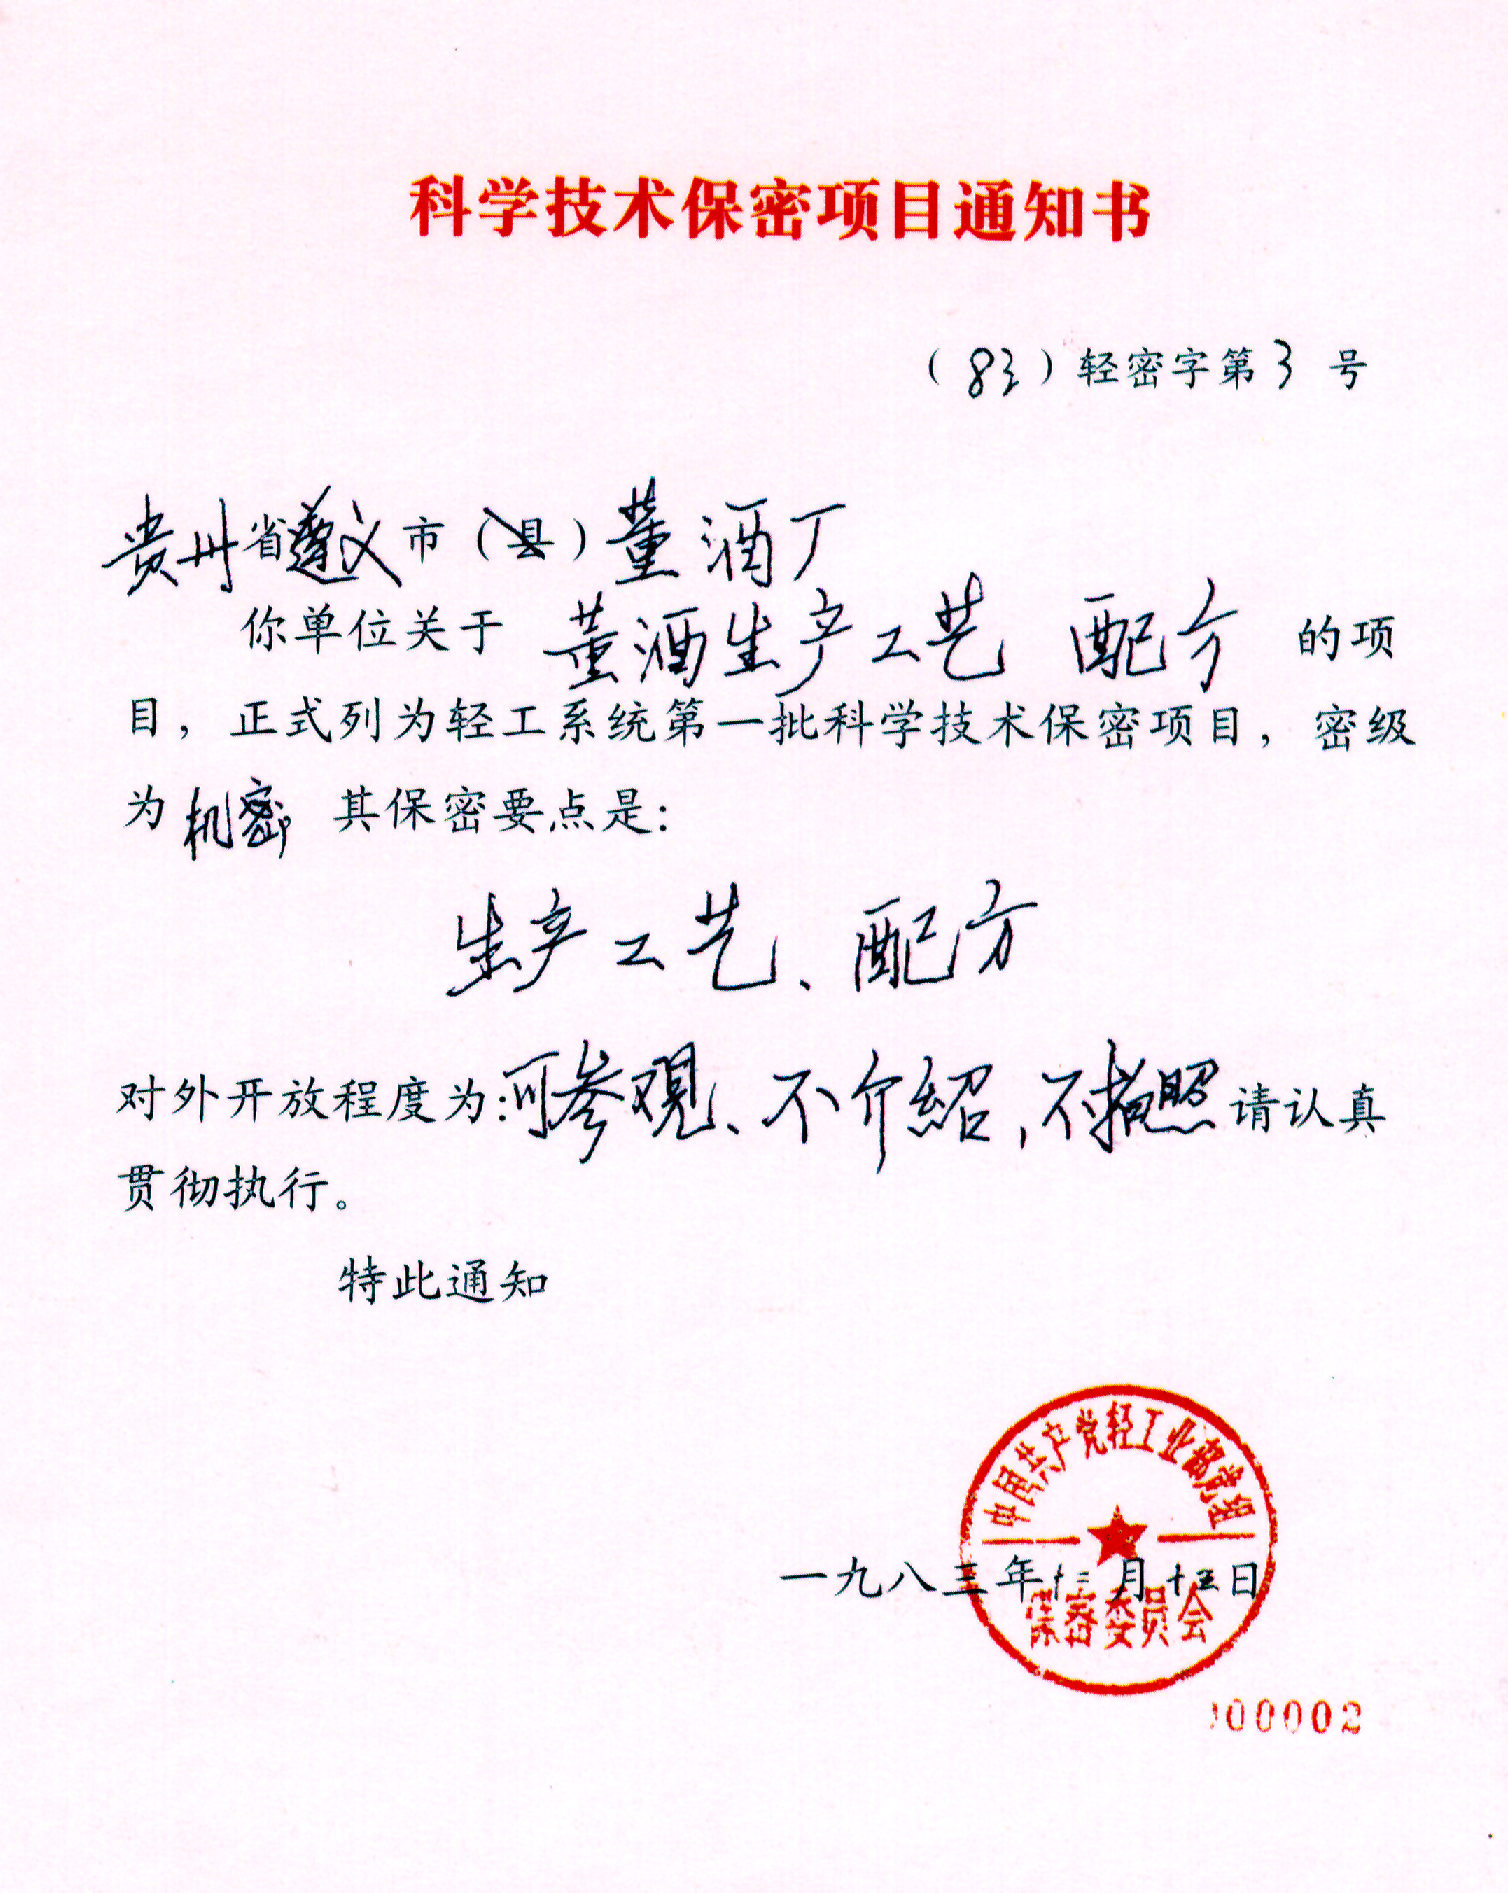 1983年董酒工艺和配方被列为国家机密保密证书